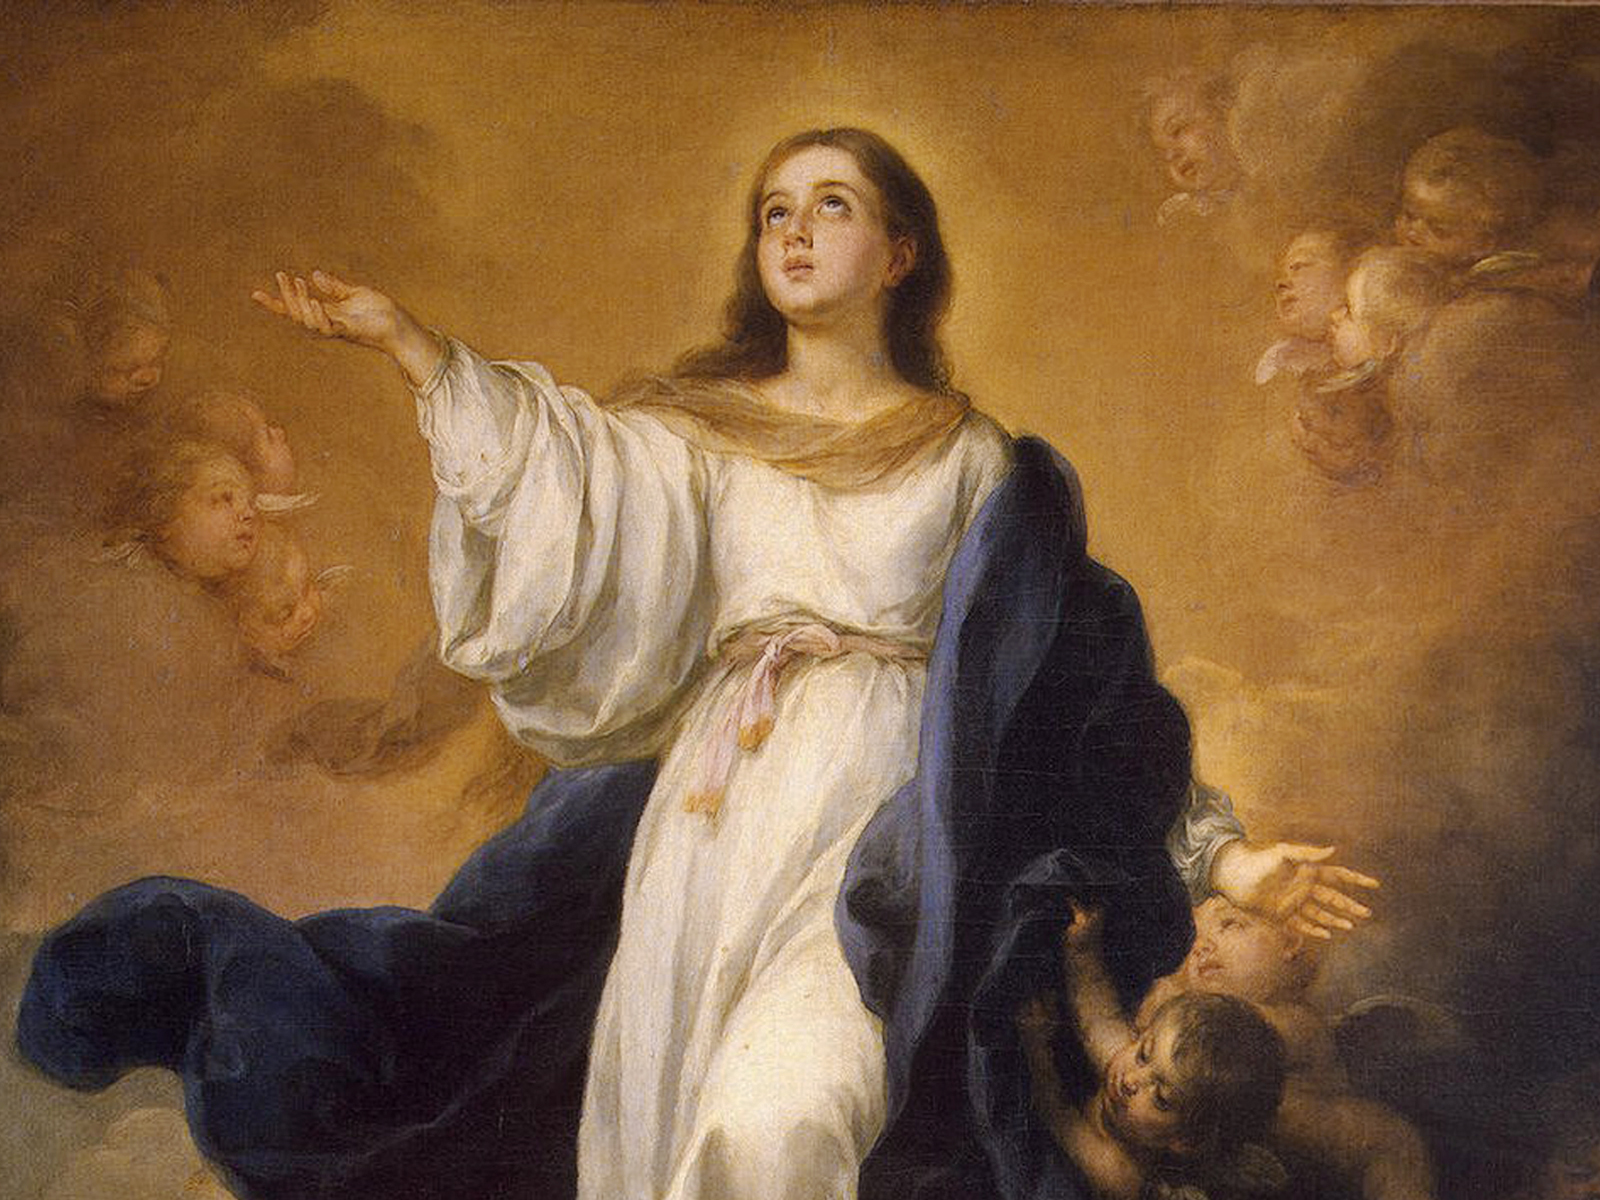 Solenidade da Assunção de Maria